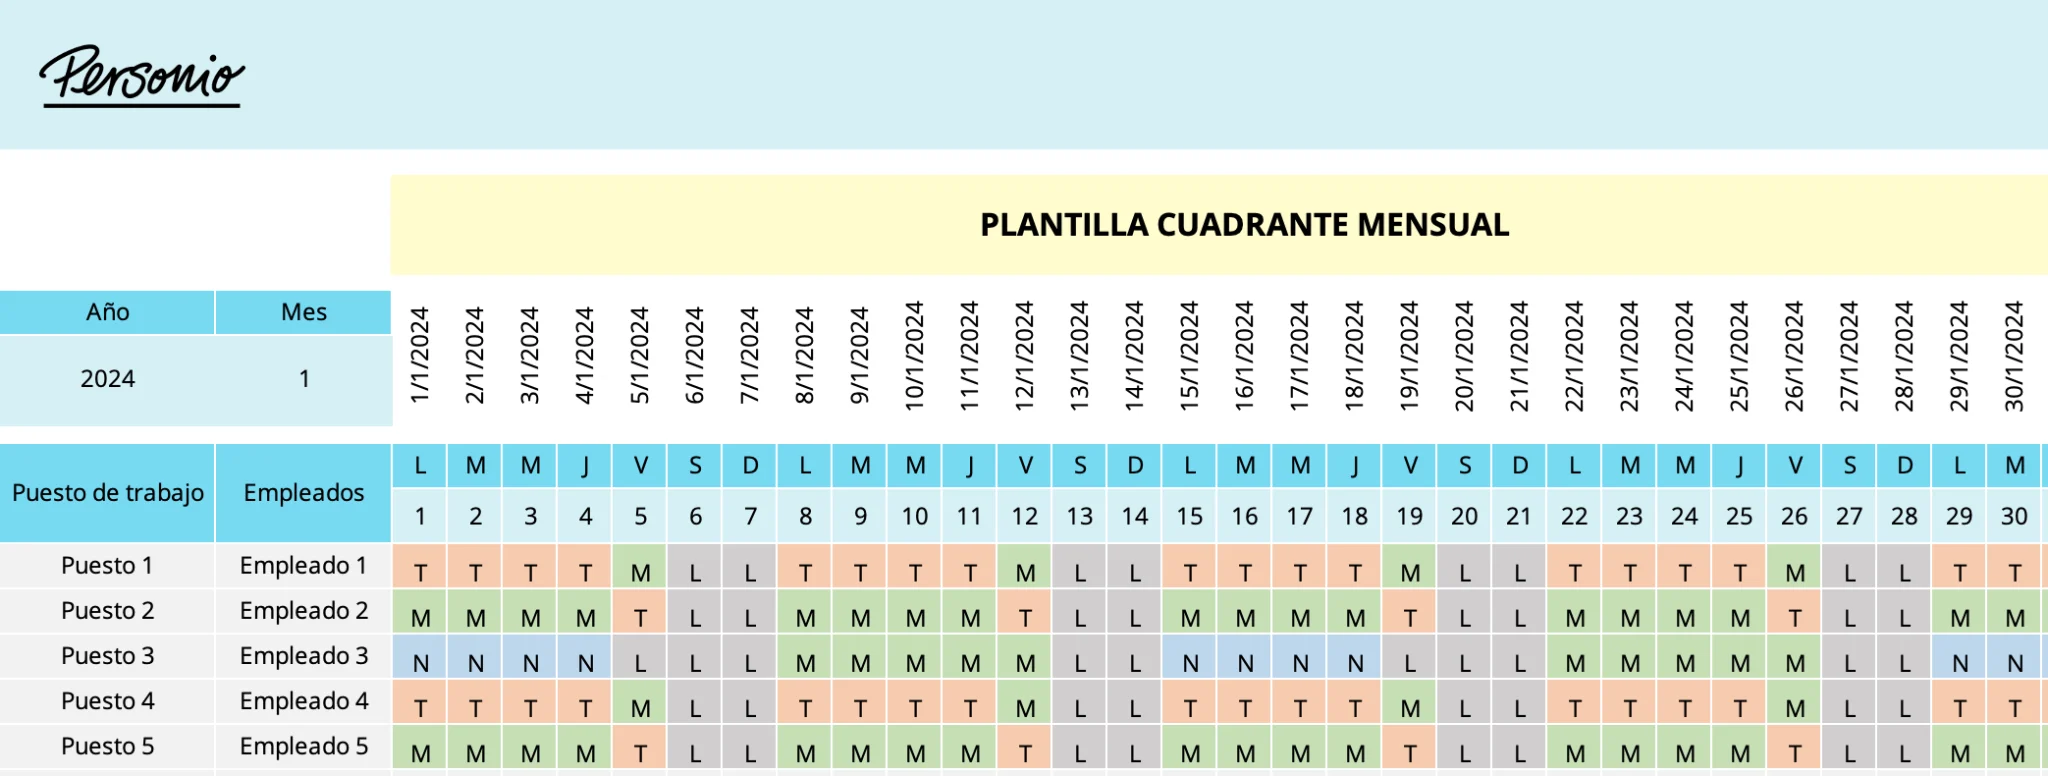 Plantilla cuadrante mensual (3)